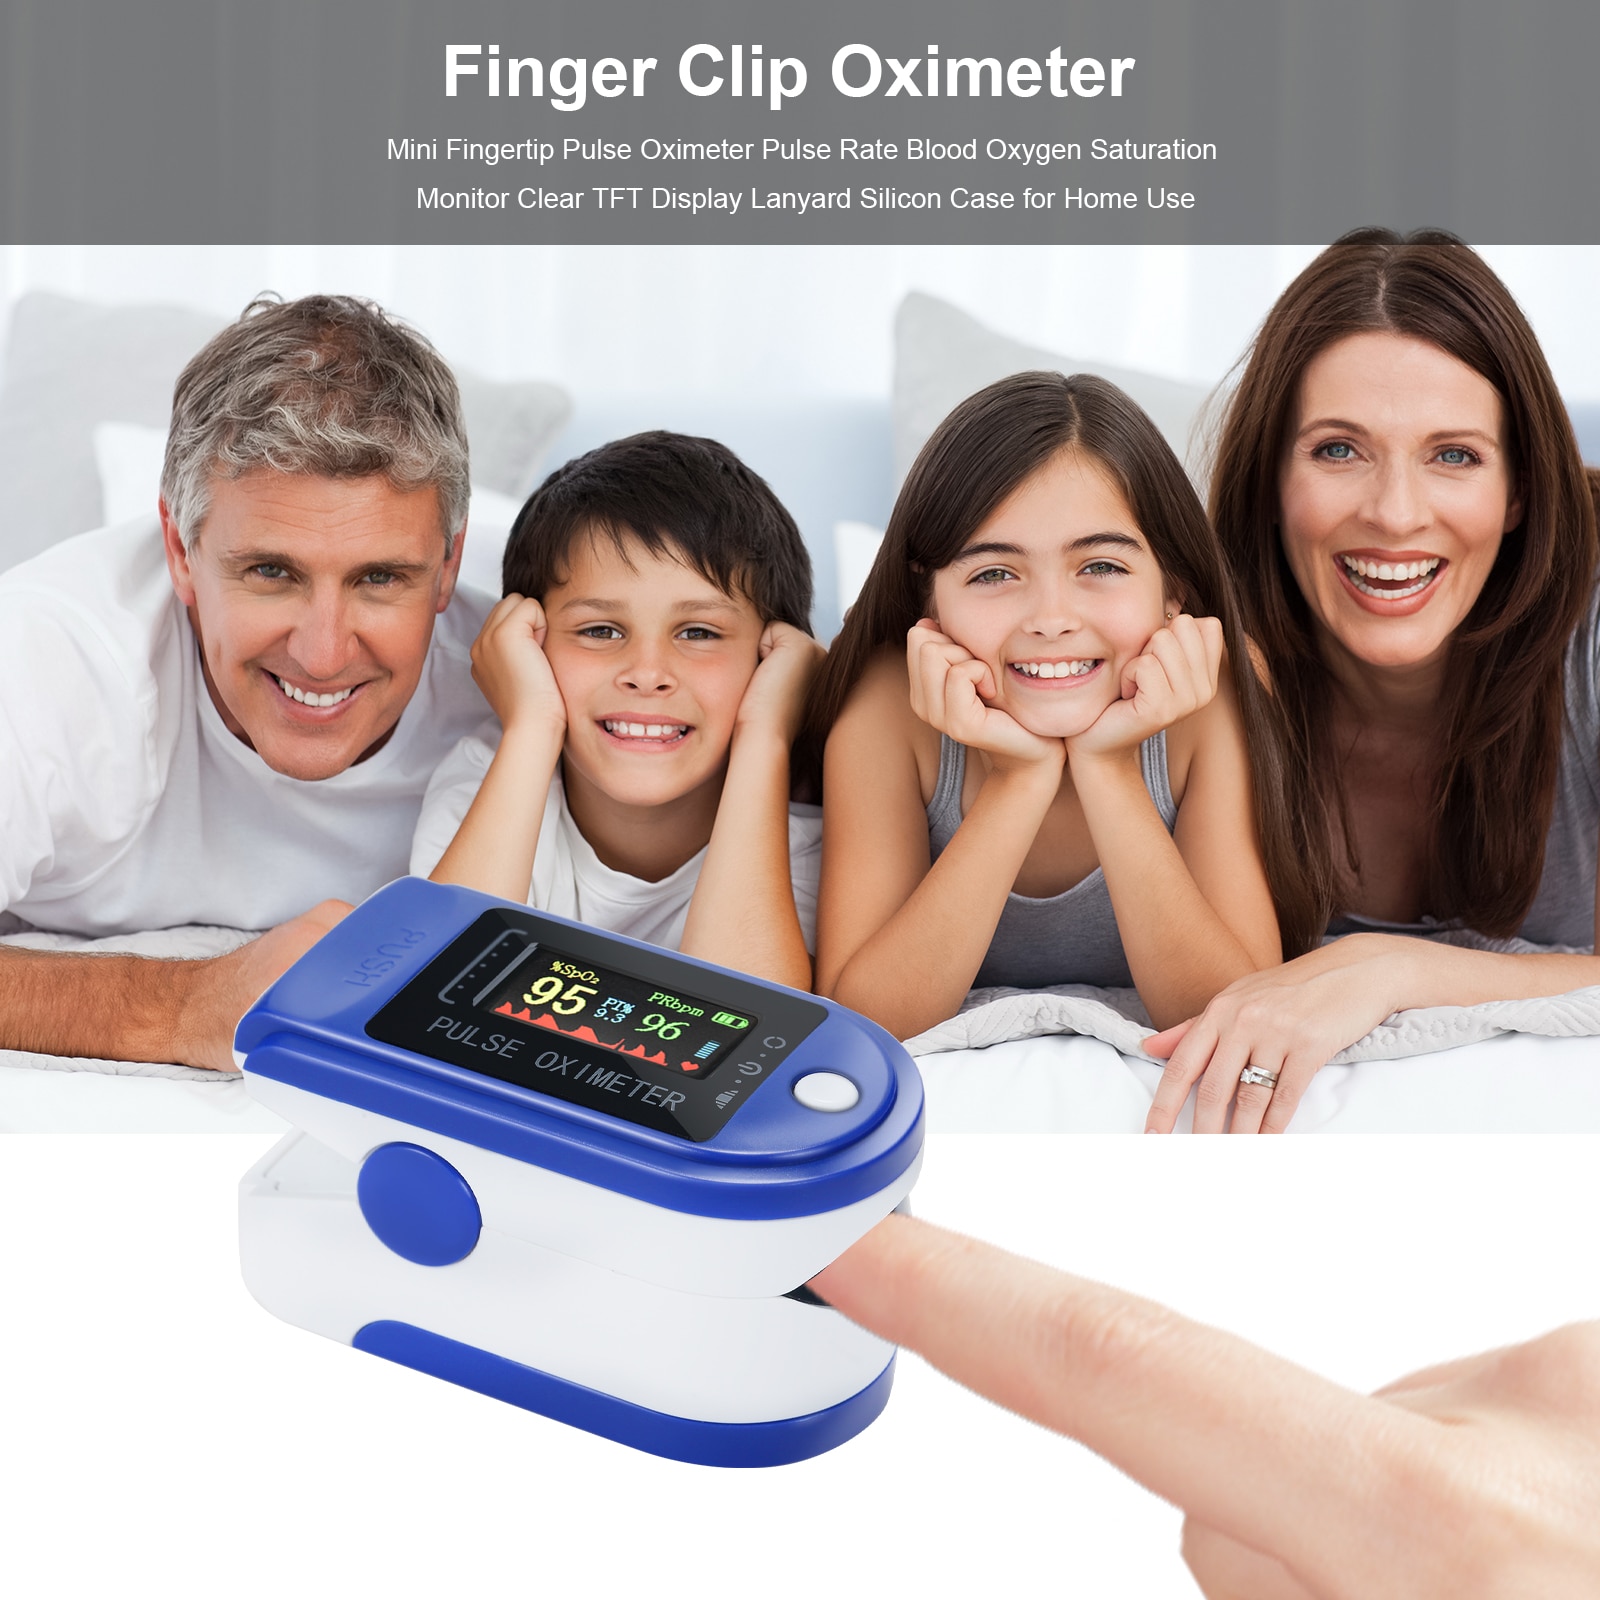 Puls oximeter fingerspids blod ilt sensor pulsossimetro da dito pulsoksymetr napalcowy spo 2 monitor pulsmåling måling